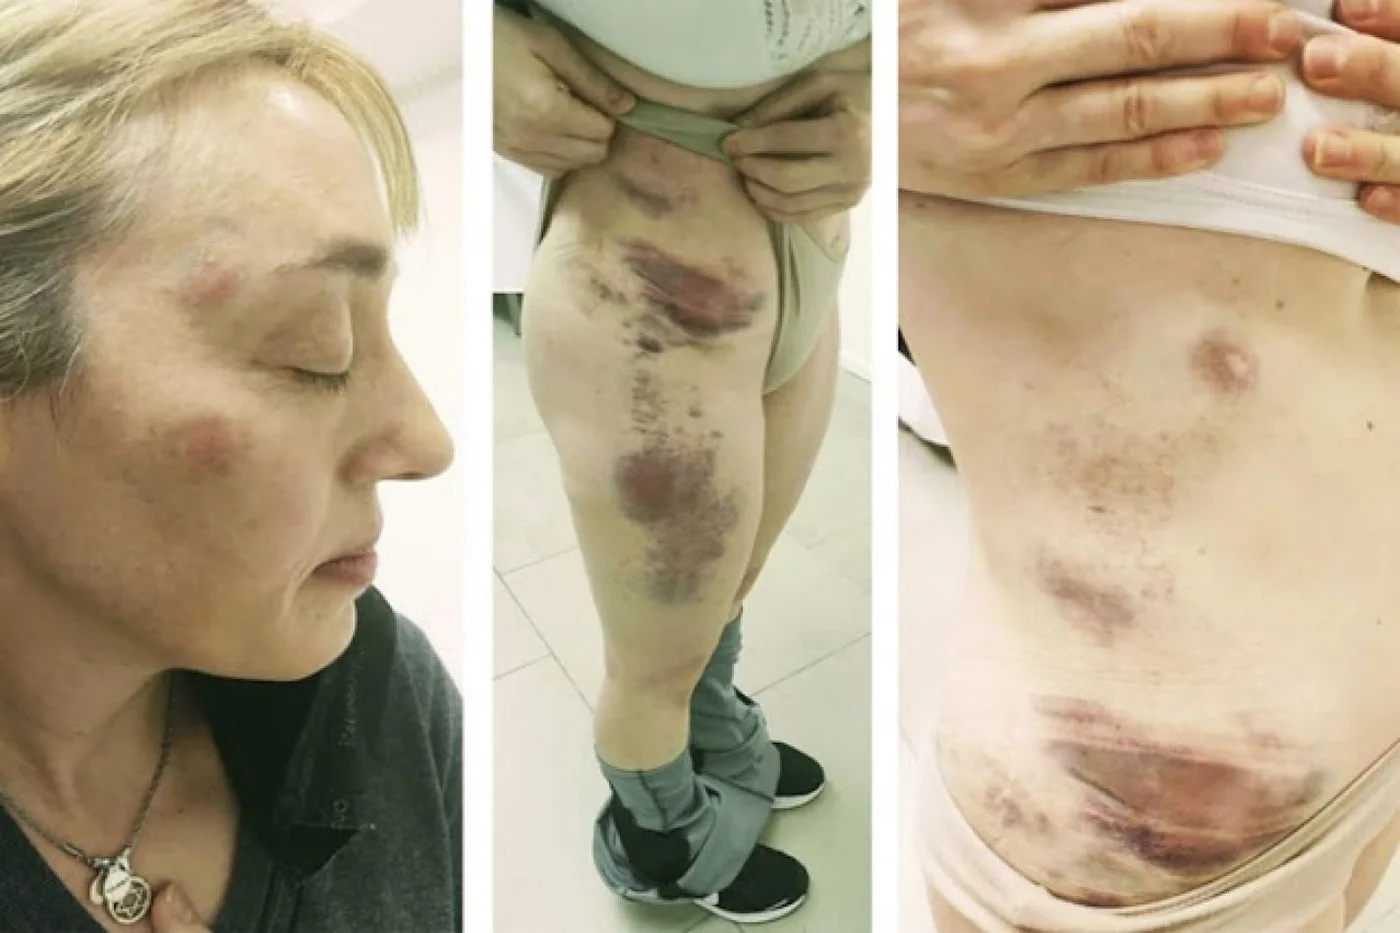 La mujer del funcionario del STJ mostró marcas de golpes en todo su cuerpo. Aseguró que fueron por los golpes de su marido.